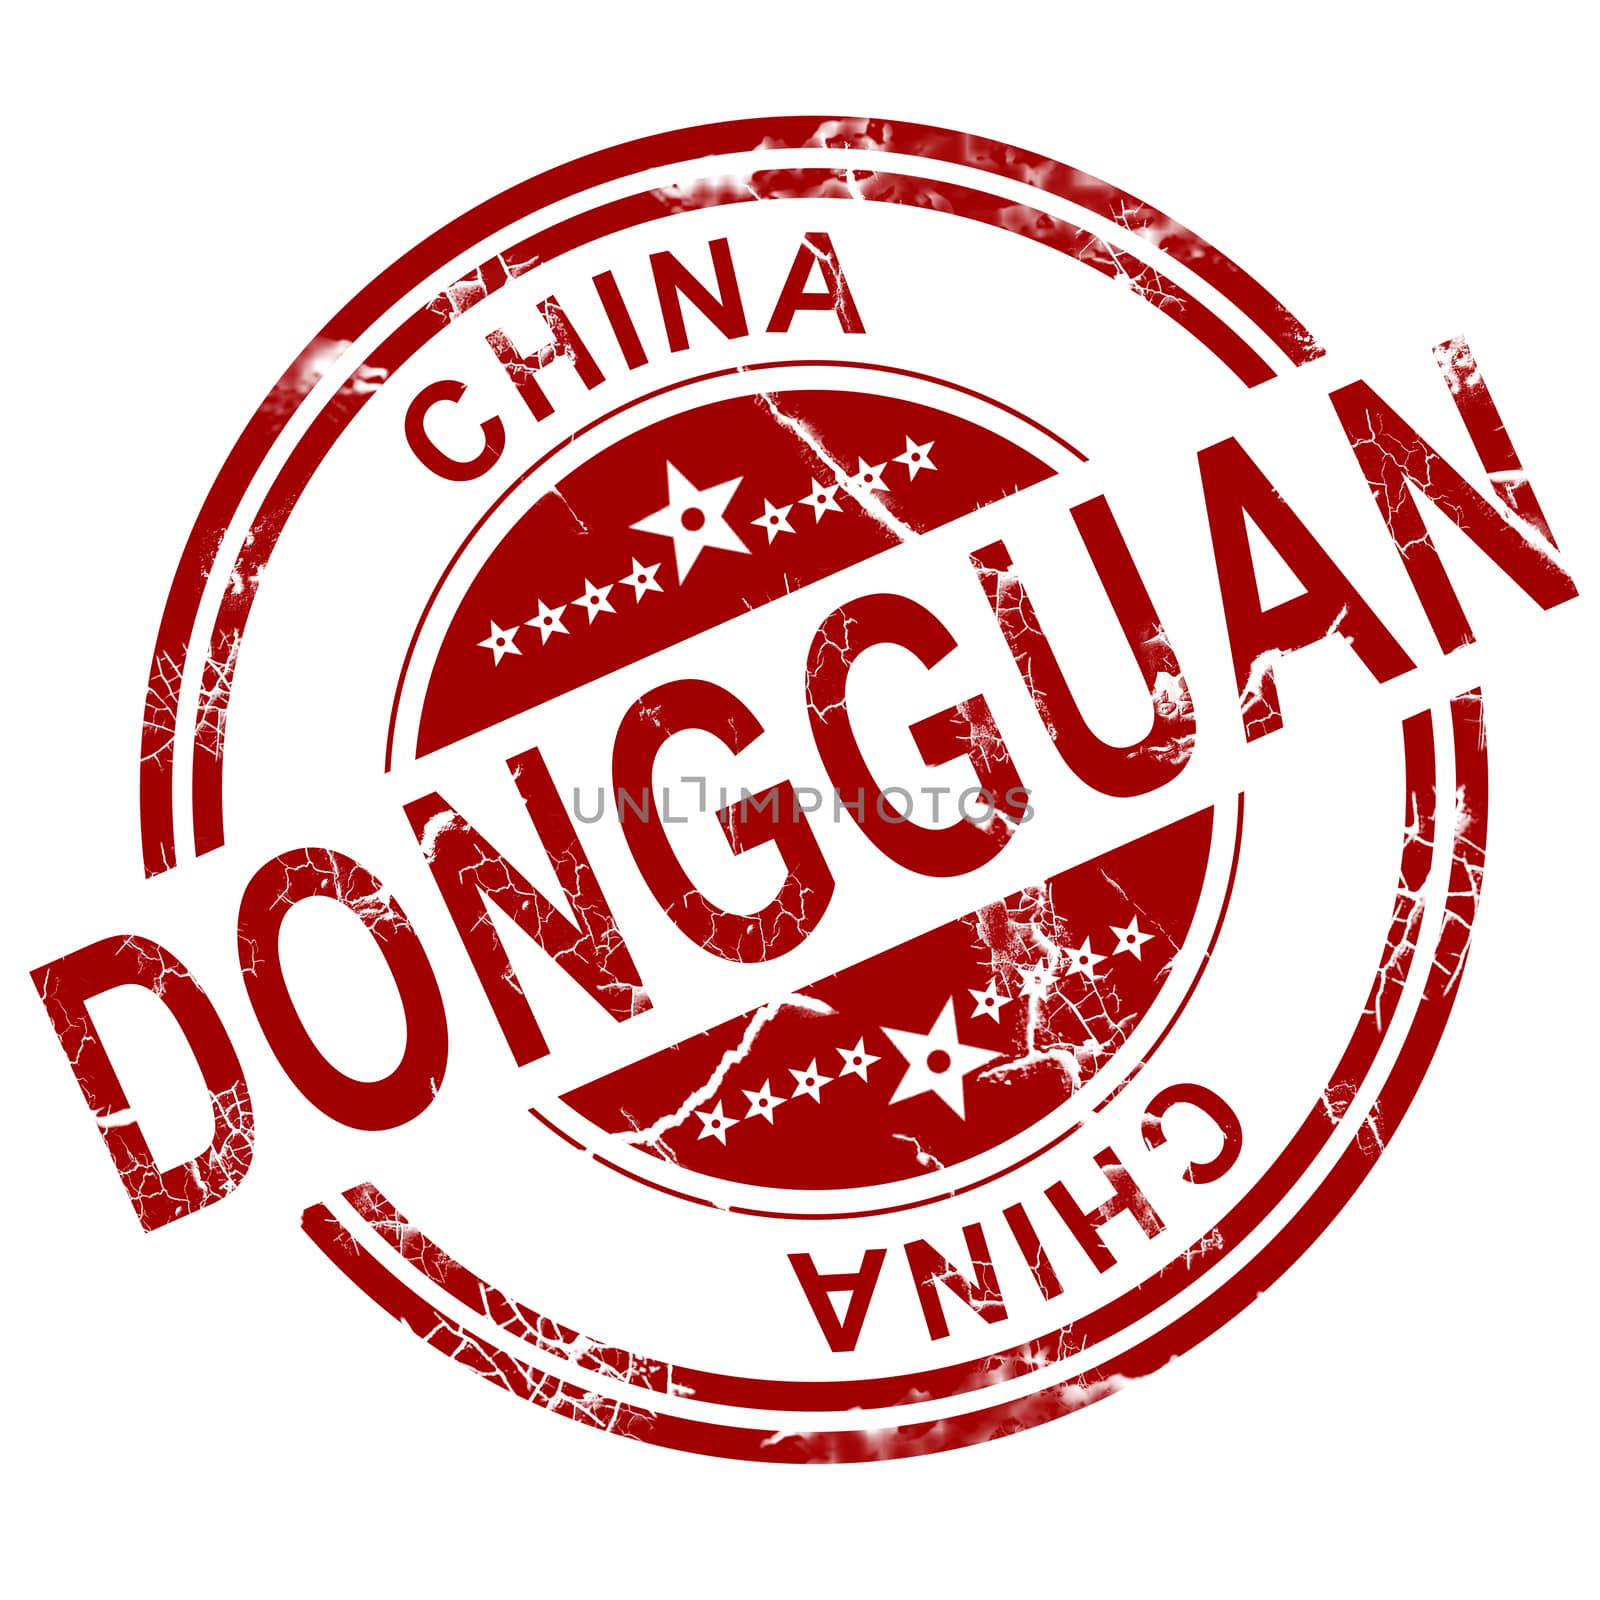 Red Dongguan stamp by tang90246